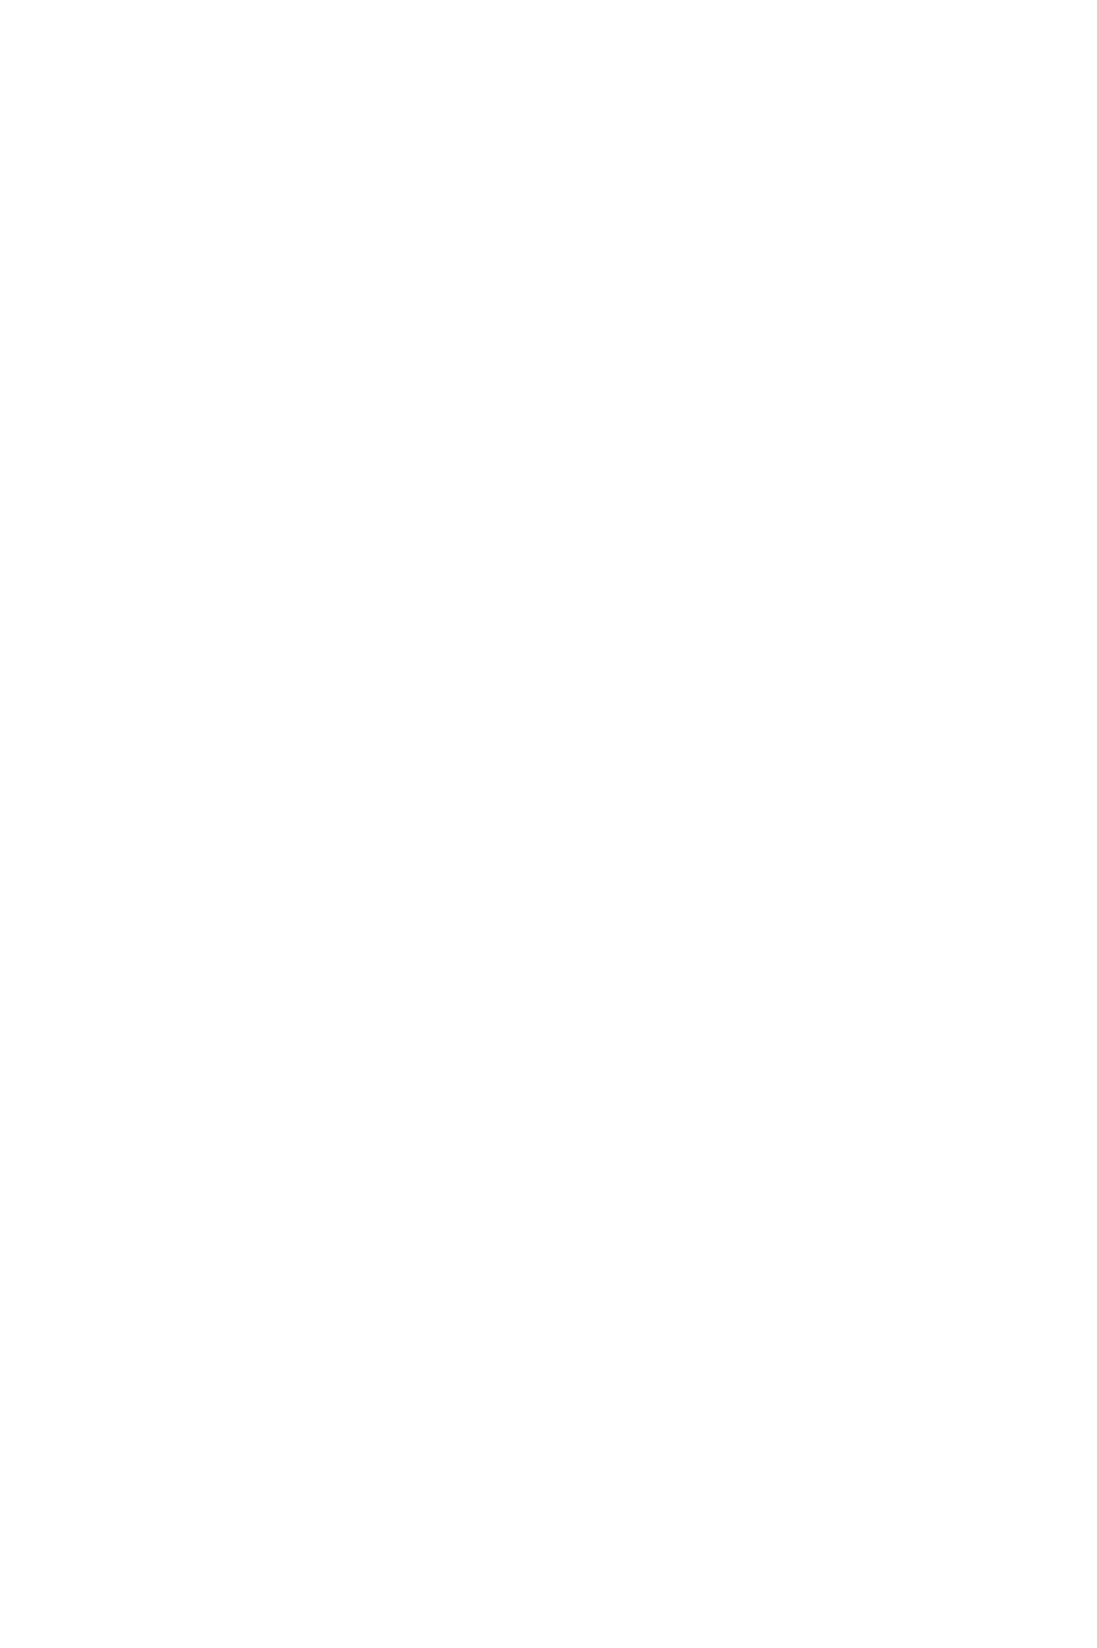 TPG Capital logo for dark backgrounds (transparent PNG)